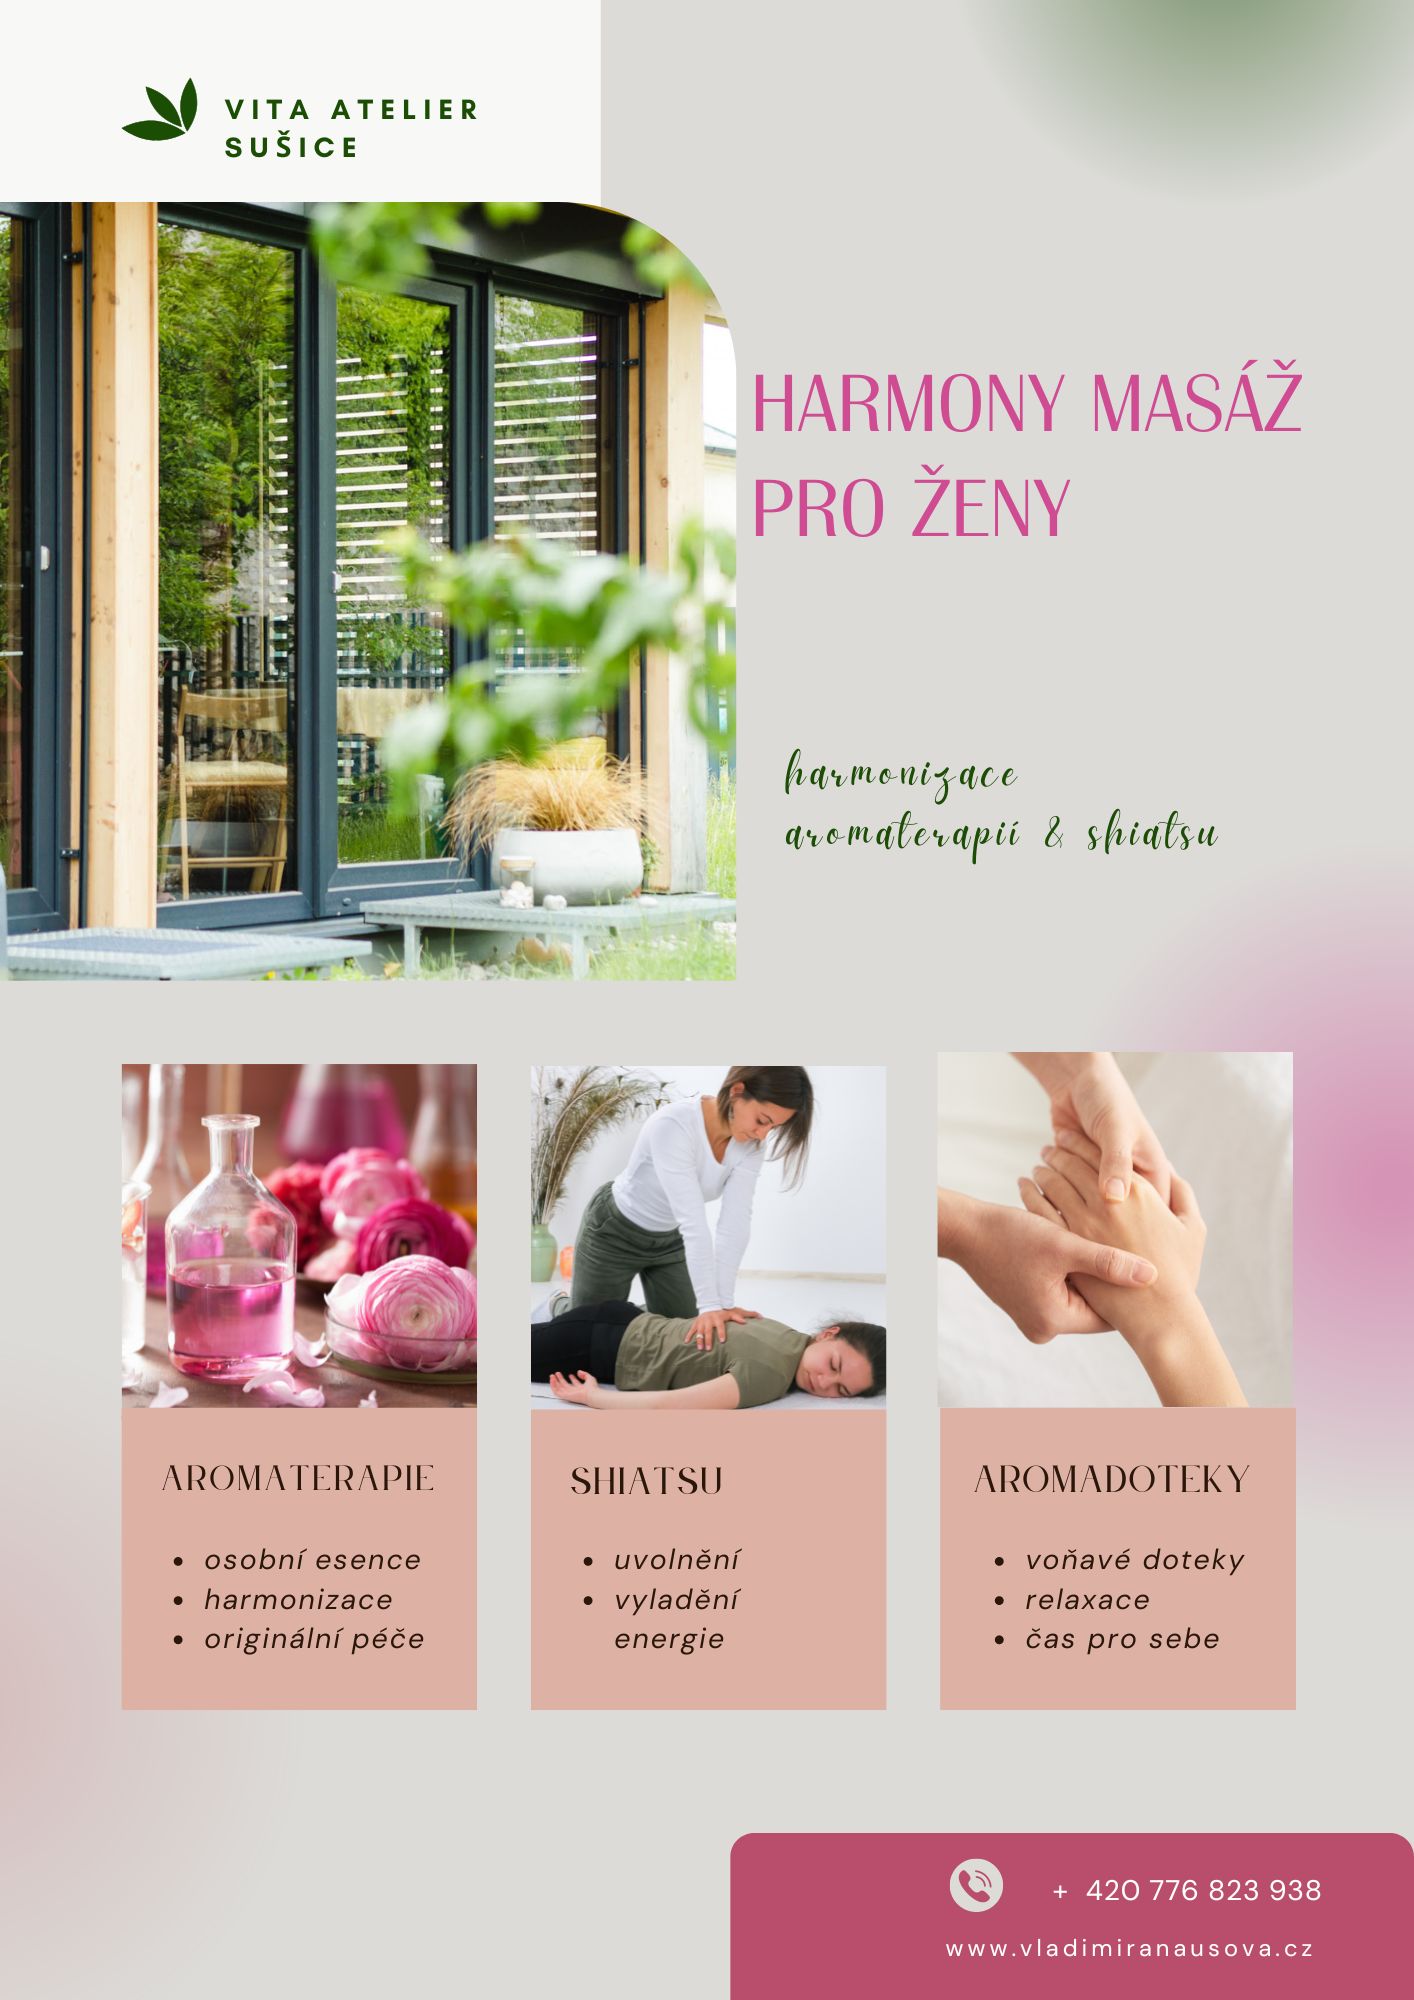 Harmony masáž pro ženy